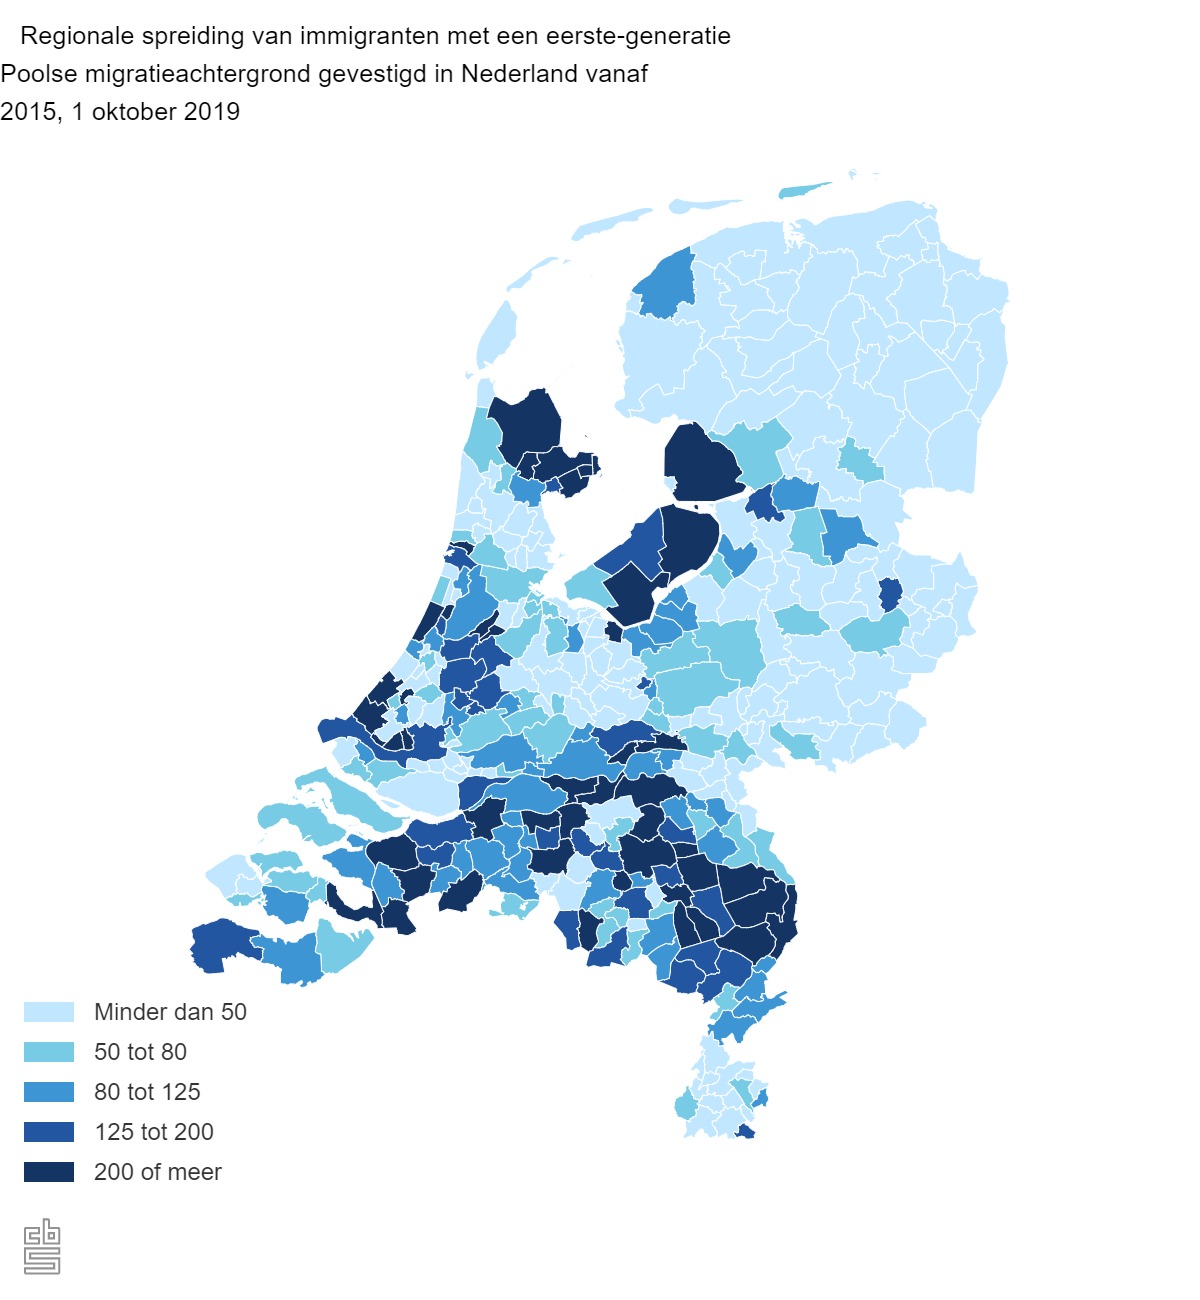 Informatie over Poolse migranten in Nederland